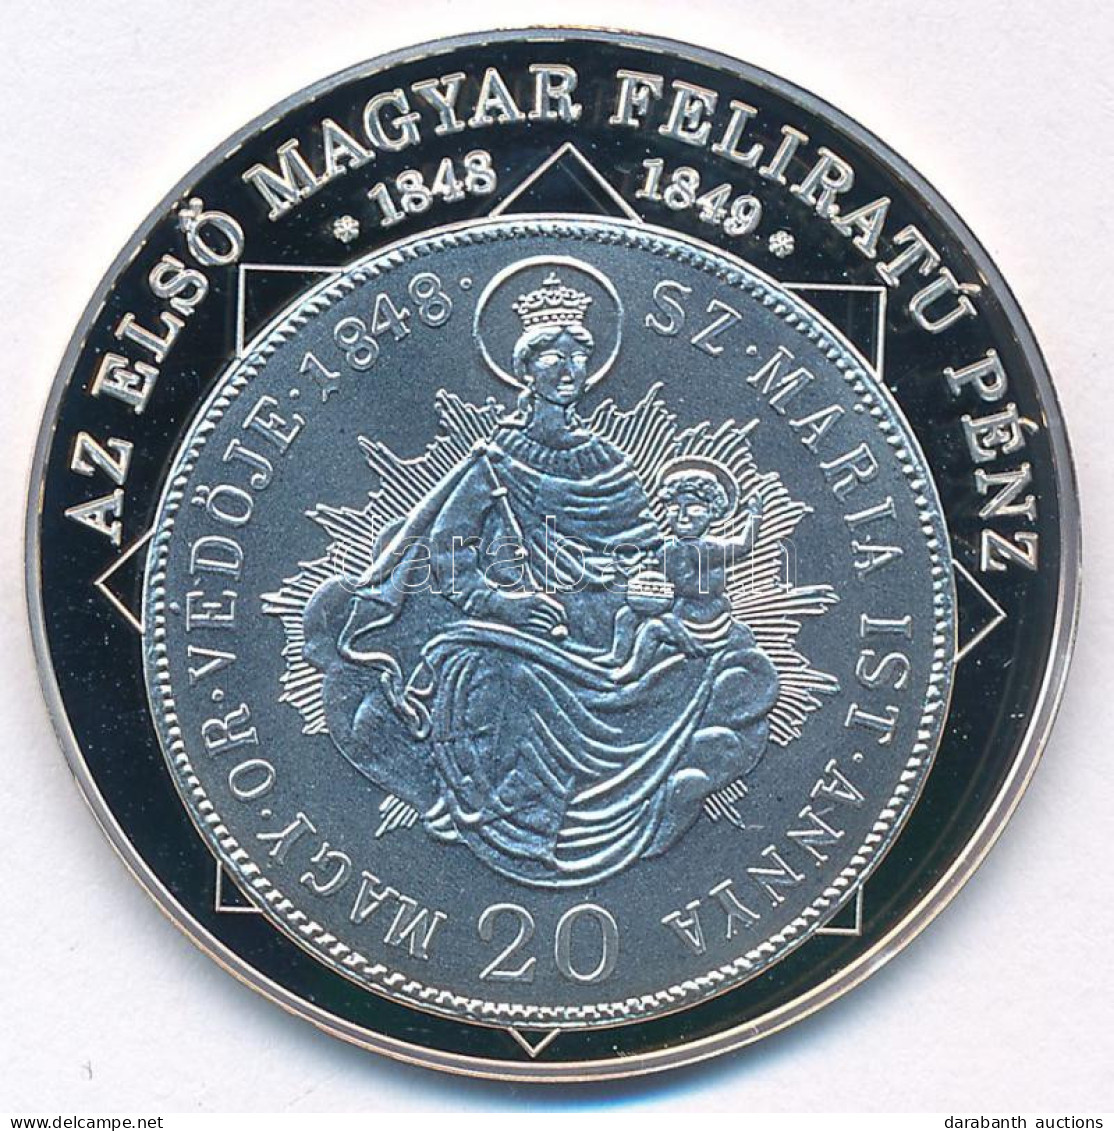 DN "A Magyar Nemzet Pénzérméi - Az Első Magyar Feliratú Pénz 1848-1849" Ag Emlékérem Tanúsítvánnyal (10,37g/0.999/35mm)  - Unclassified